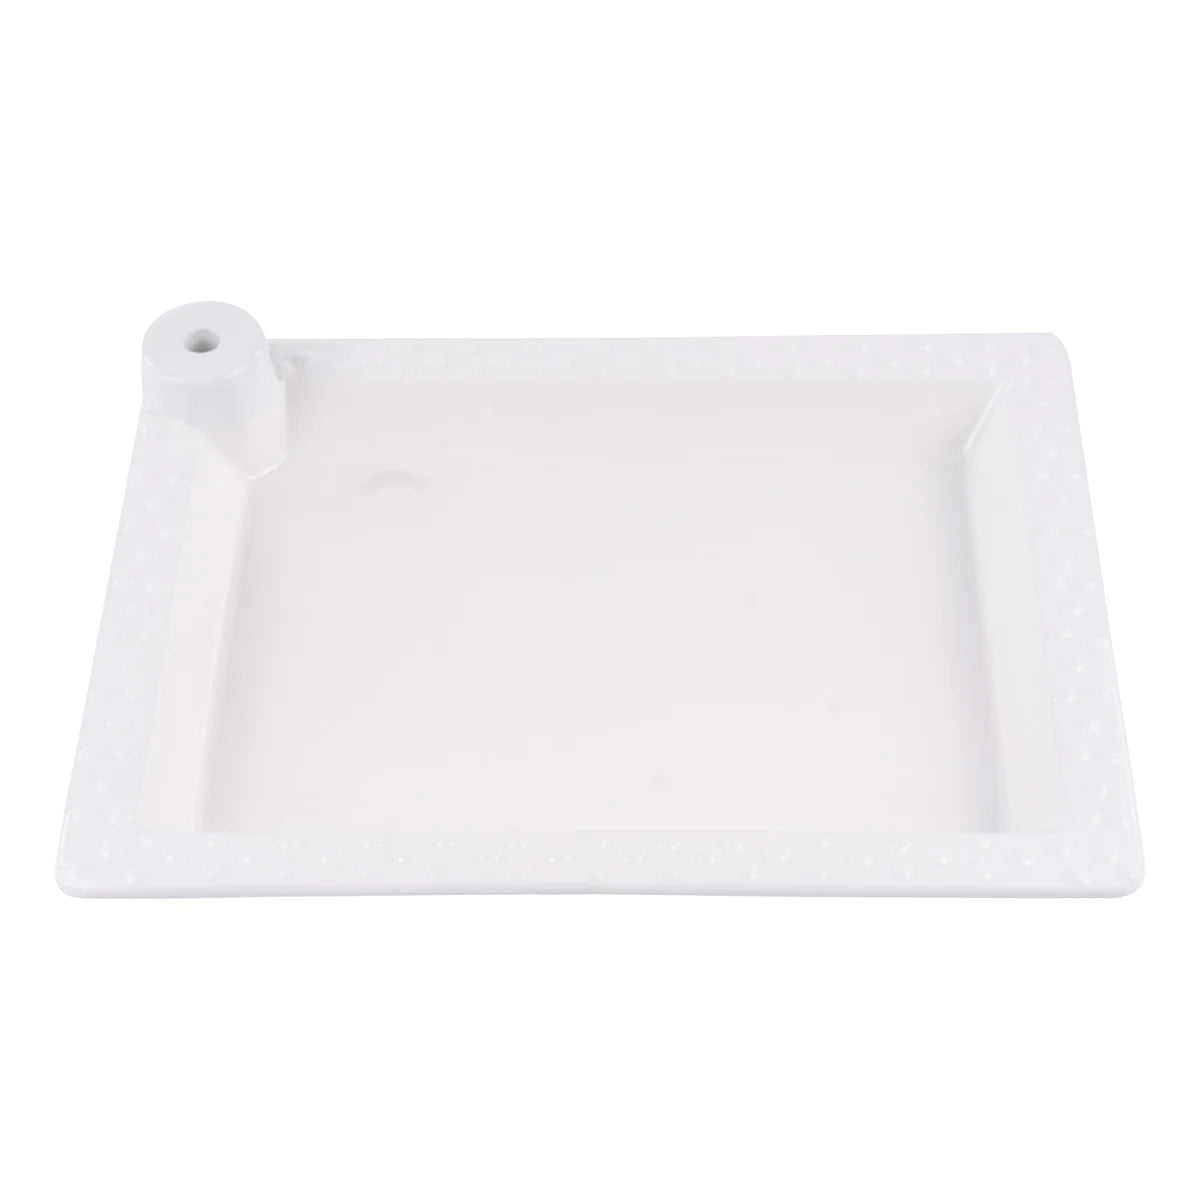 White Rectangular Platter